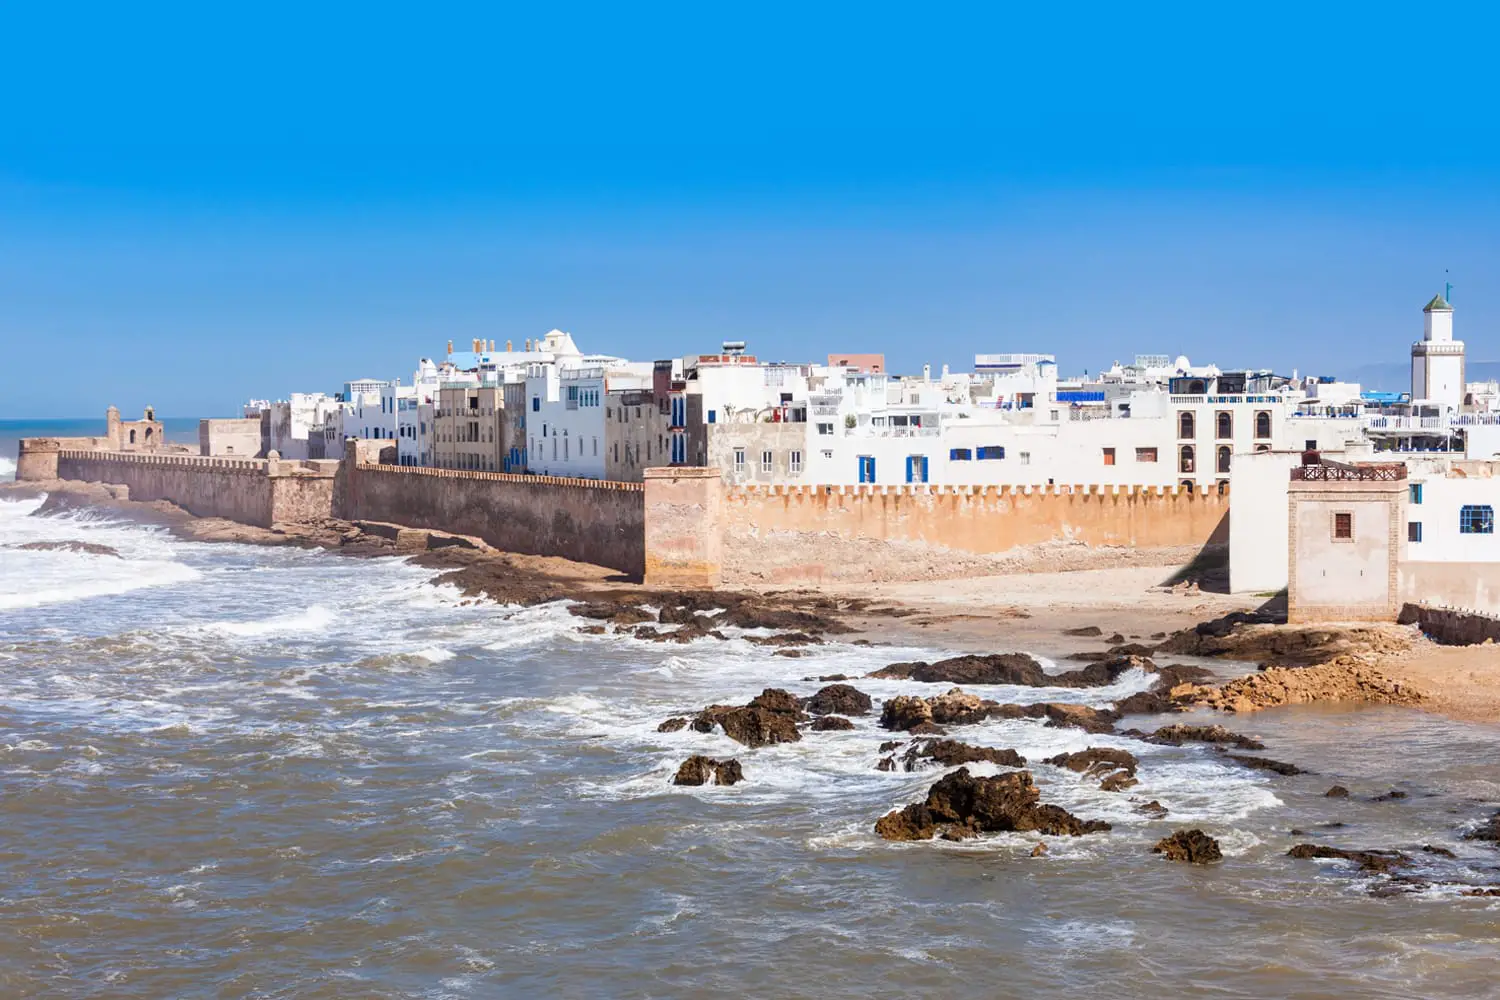 Εναέρια πανοραμική άποψη των επάλξεων Essaouira στην Essaouira, Μαρόκο. Η Εσαουίρα είναι μια πόλη στην περιοχή του δυτικού Μαρόκου στις ακτές του Ατλαντικού.